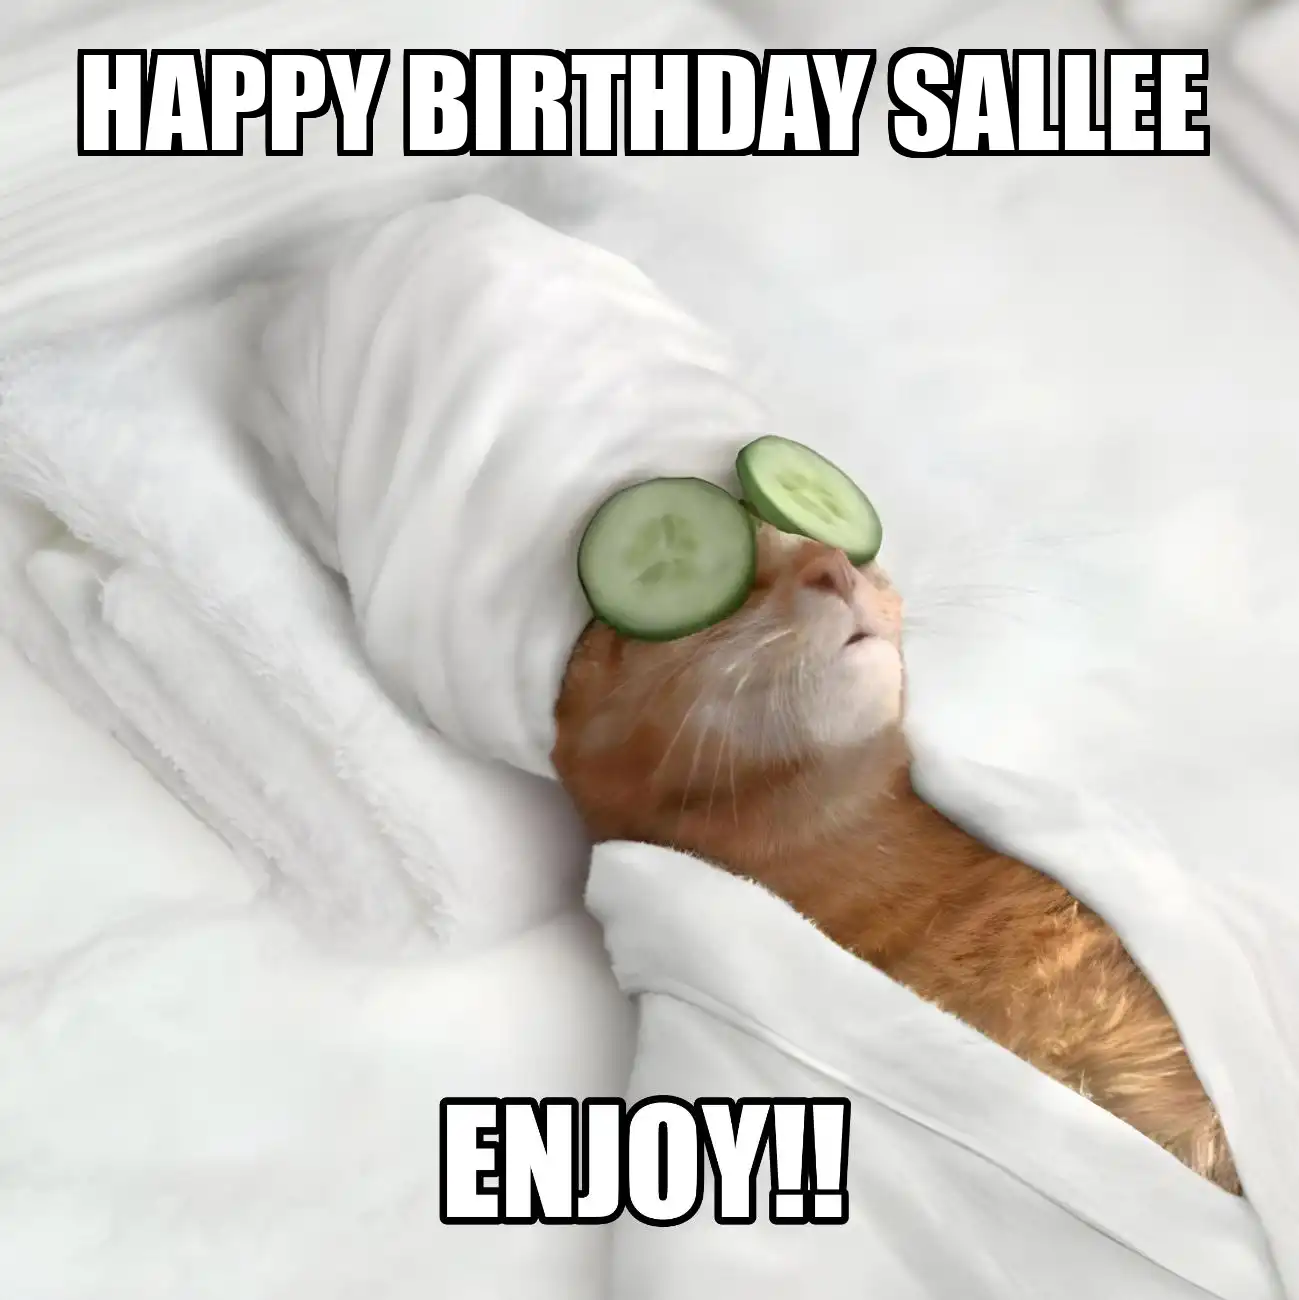 Happy Birthday Sallee Enjoy Cat Meme